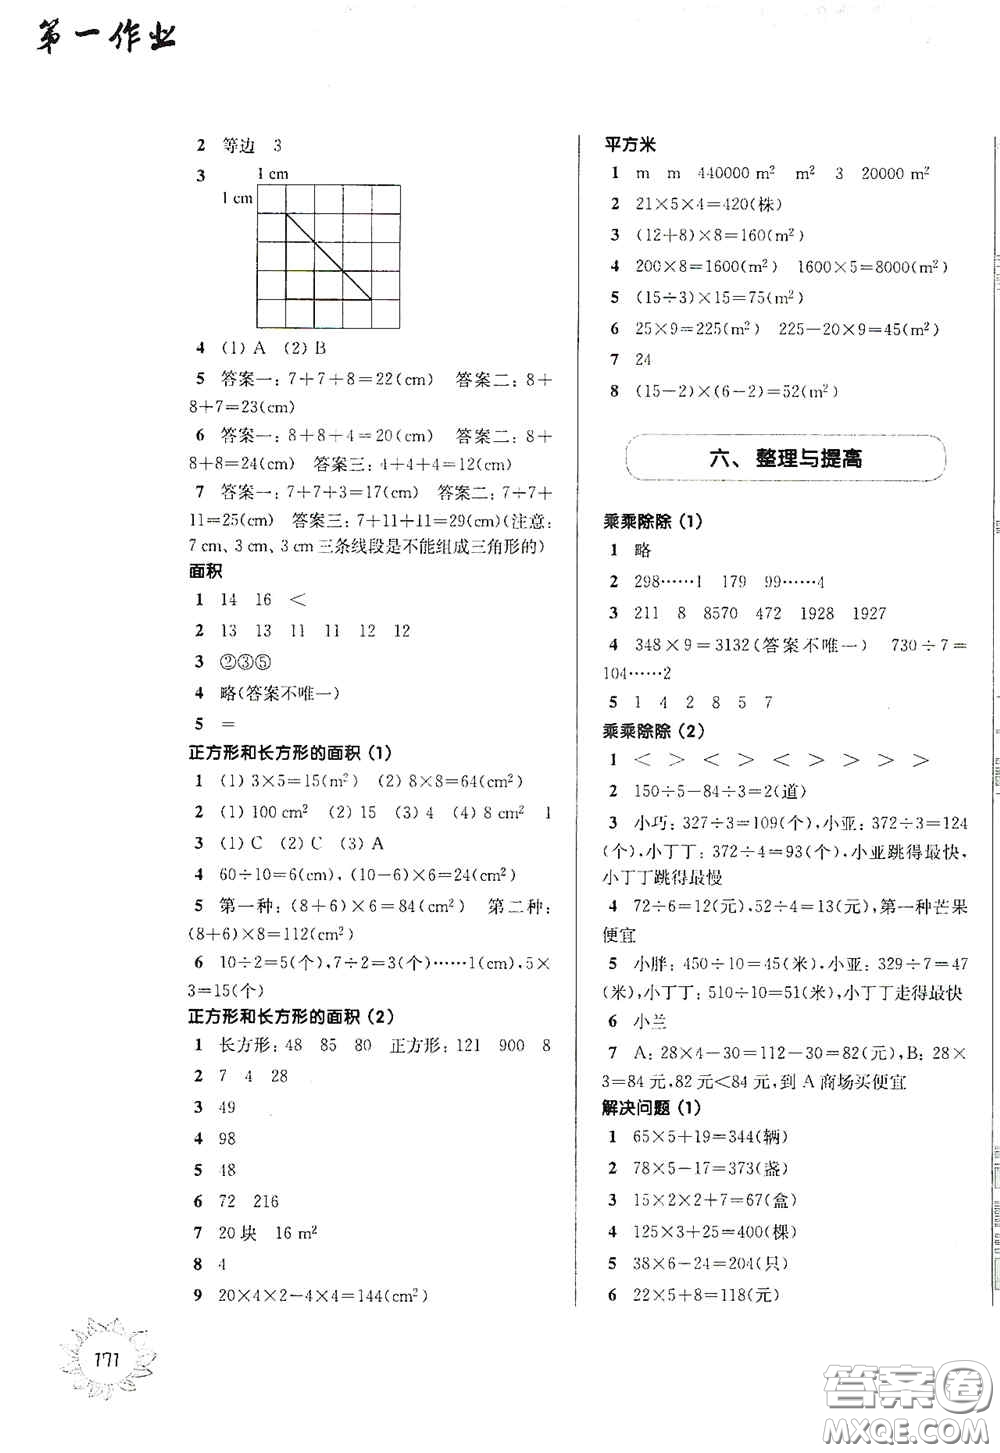 华东师范大学出版社2020第一作业三年级数学第一学期答案